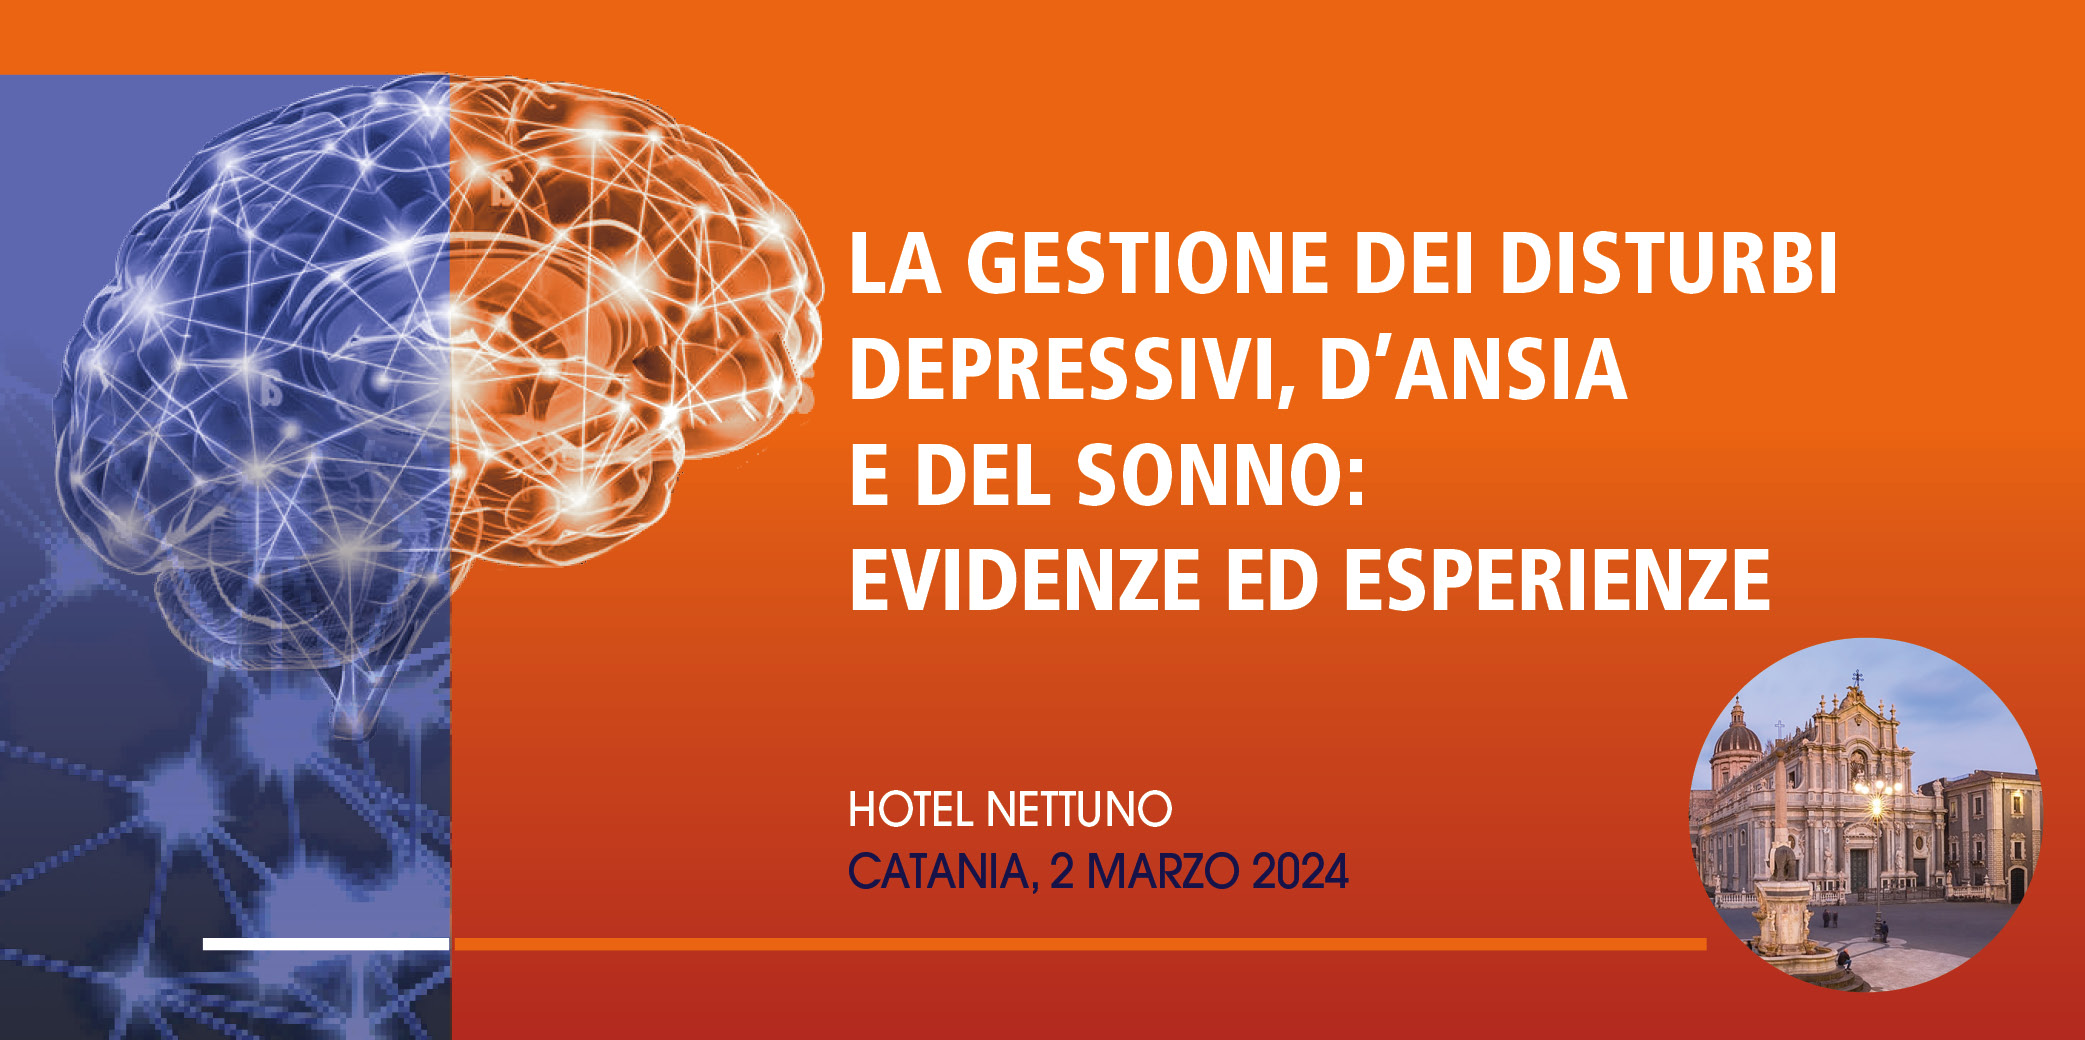 La gestione dei disturbi depressivi, d’ansia e del sonno: evidenze ed esperienze – Catania 2 Marzo 2024